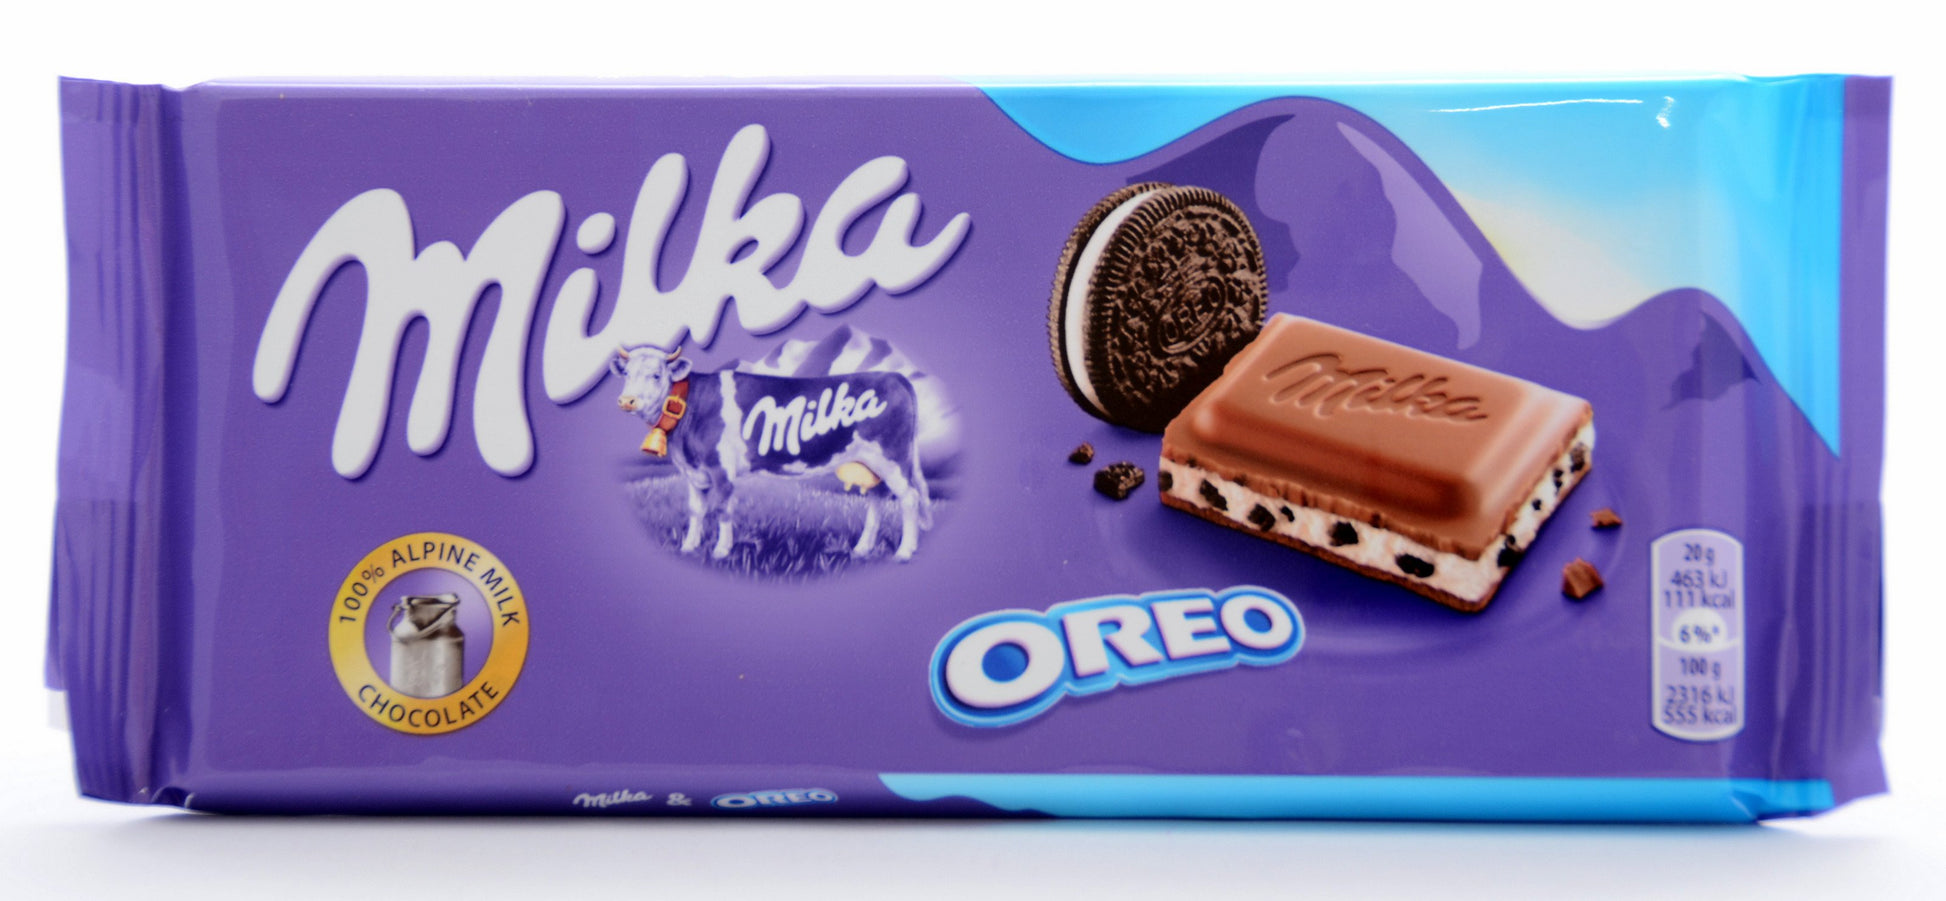 Milka Chocolate 